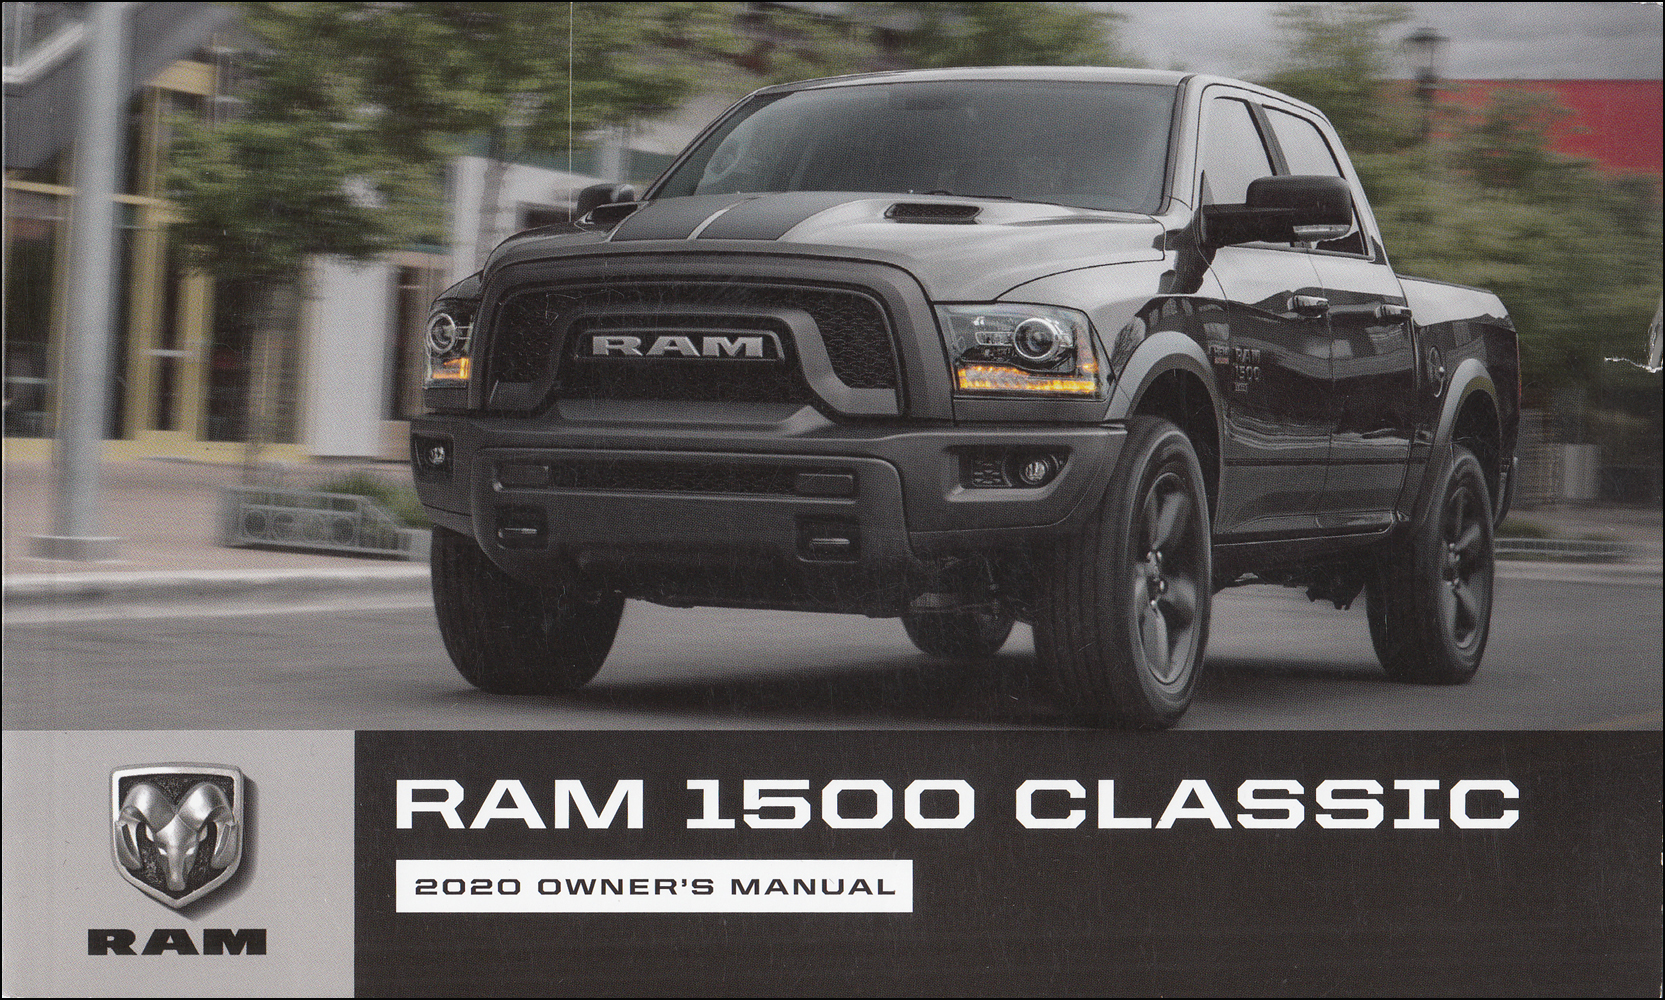 2020 Ram 1500 Classic Owner's Manual Original